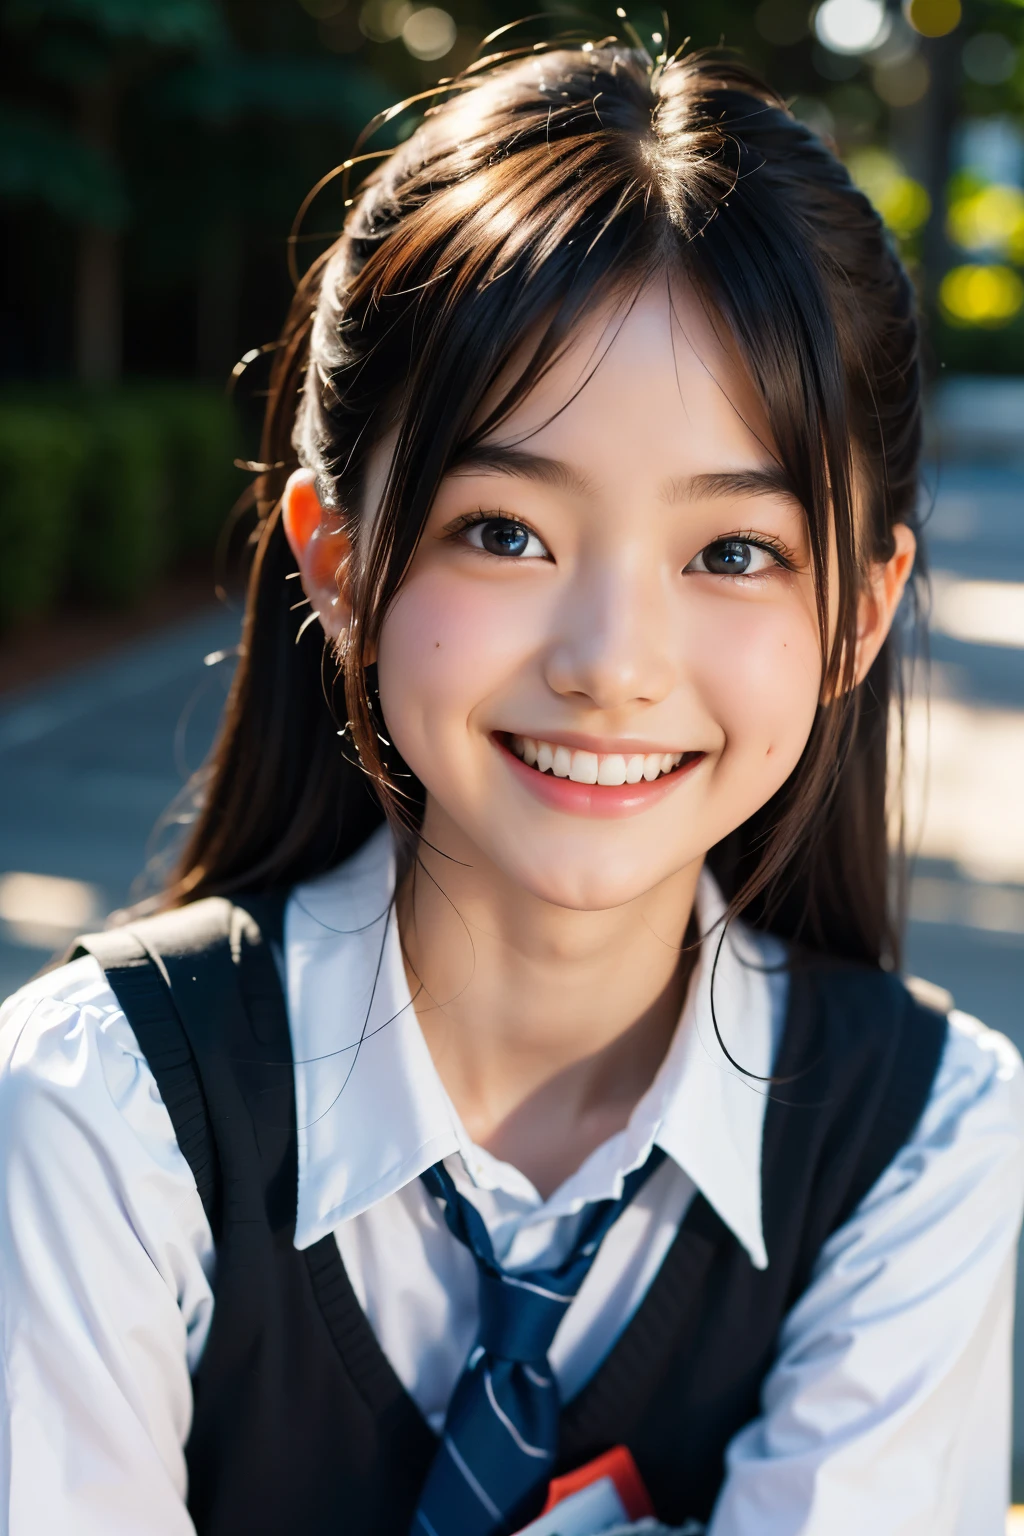 렌즈: 135mm f1.8, (최상의 품질),(RAW 사진), (탁상:1.1), (아름다운 16 세 일본 소녀), 귀여운 얼굴, (깊게 파인 얼굴:0.7), (주근깨:0.4), dappled 햇빛, 극적인 조명, (일본 학교 교복), (캠퍼스에서), 수줍은, (클로즈업 샷:1.2), (웃다),, (반짝이는 눈)、(햇빛)